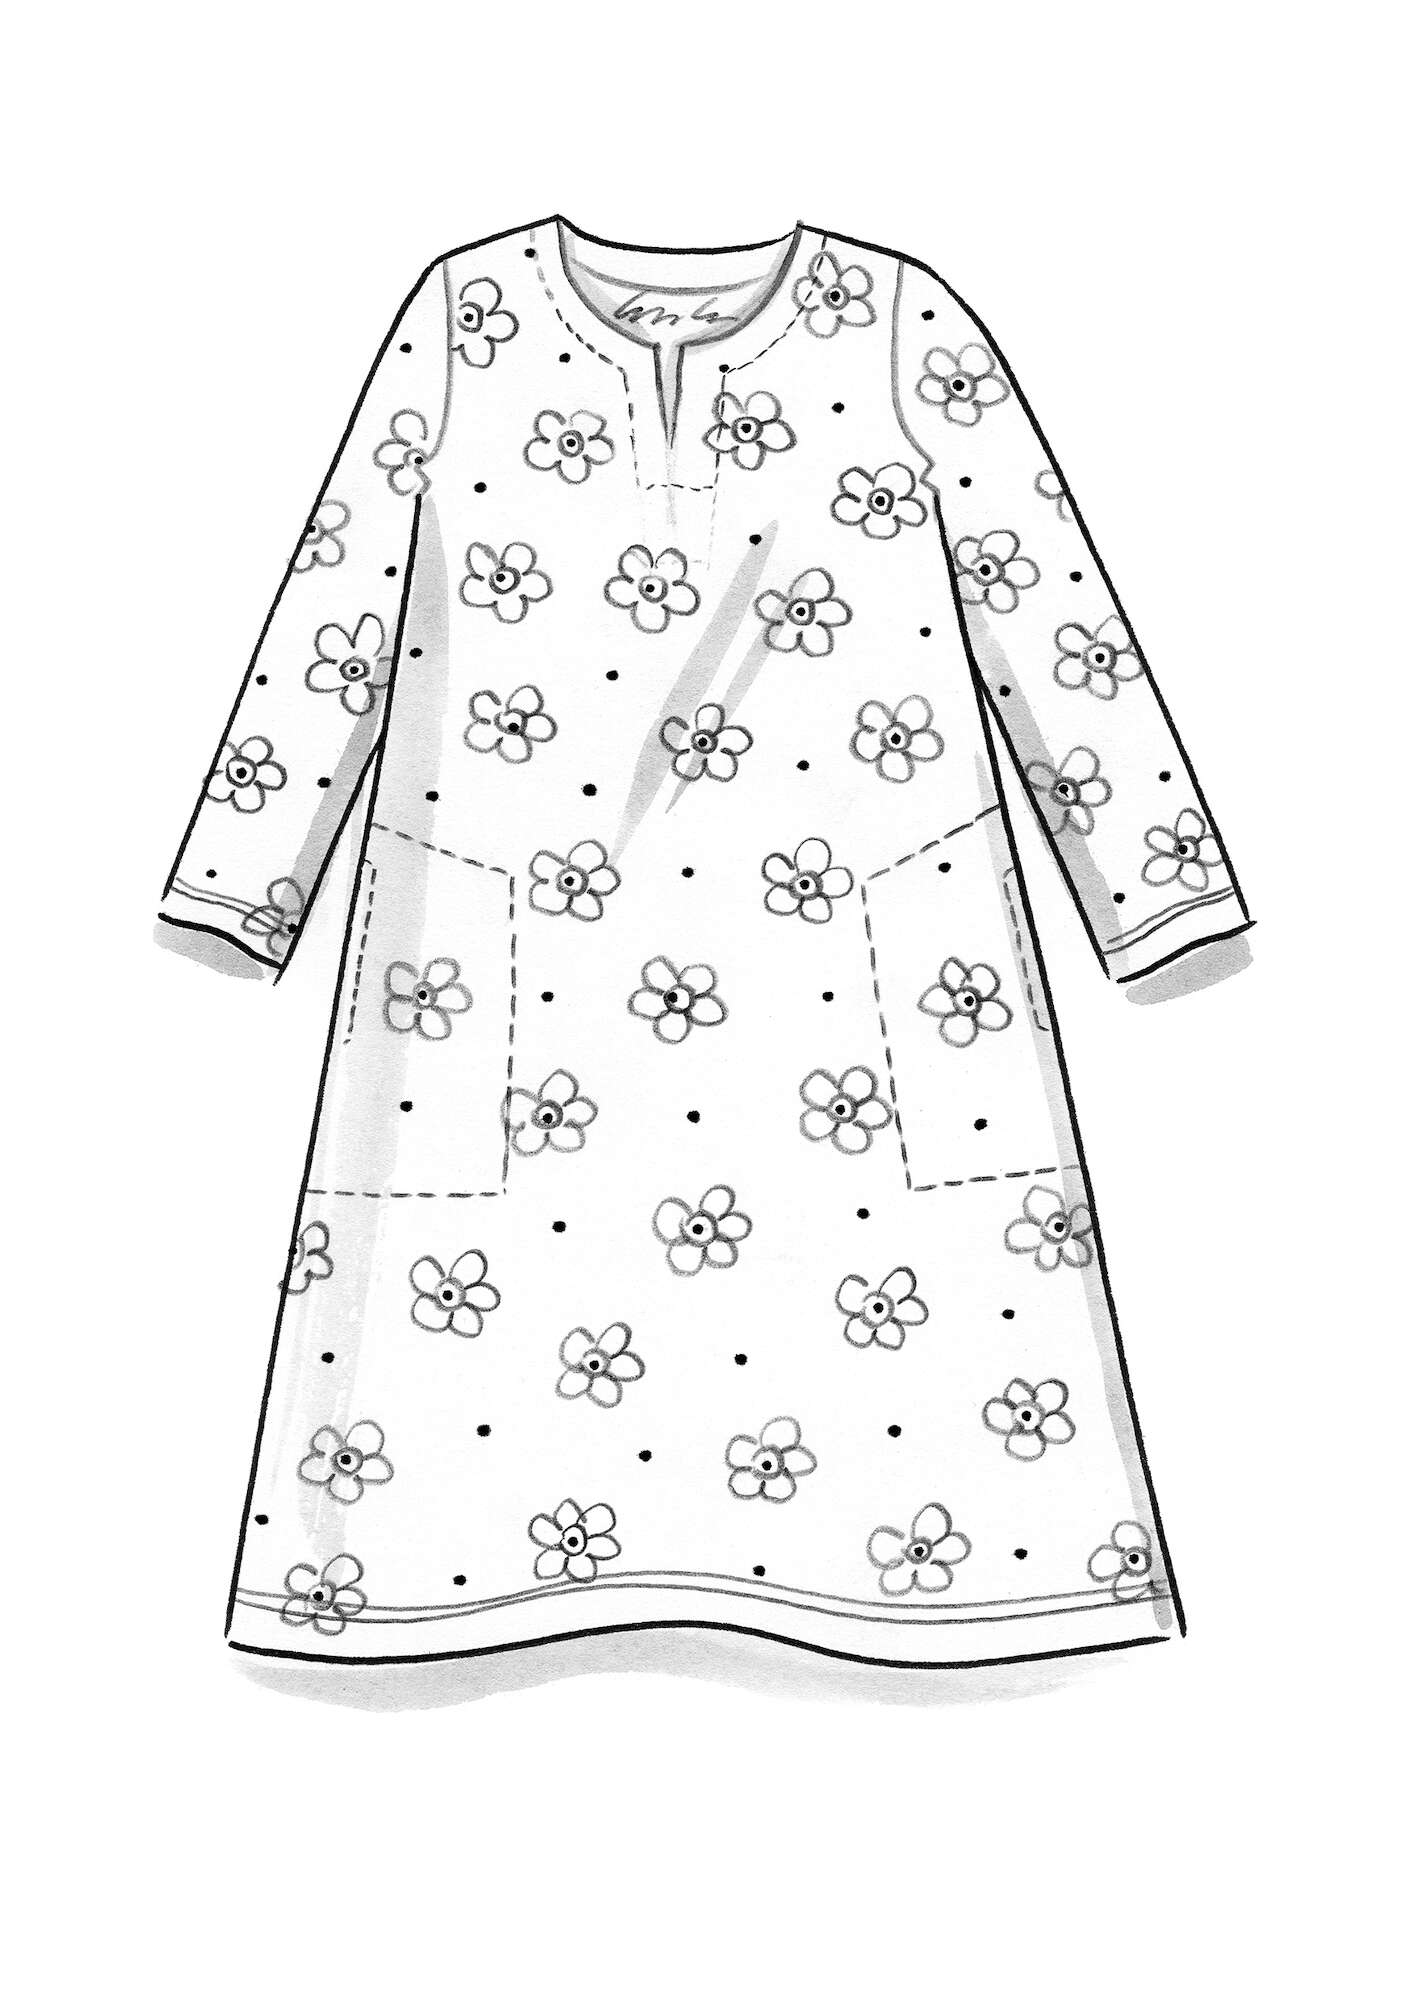 Tricot jurk  Belle  van biologisch katoen/elastaan agaatrood/dessin